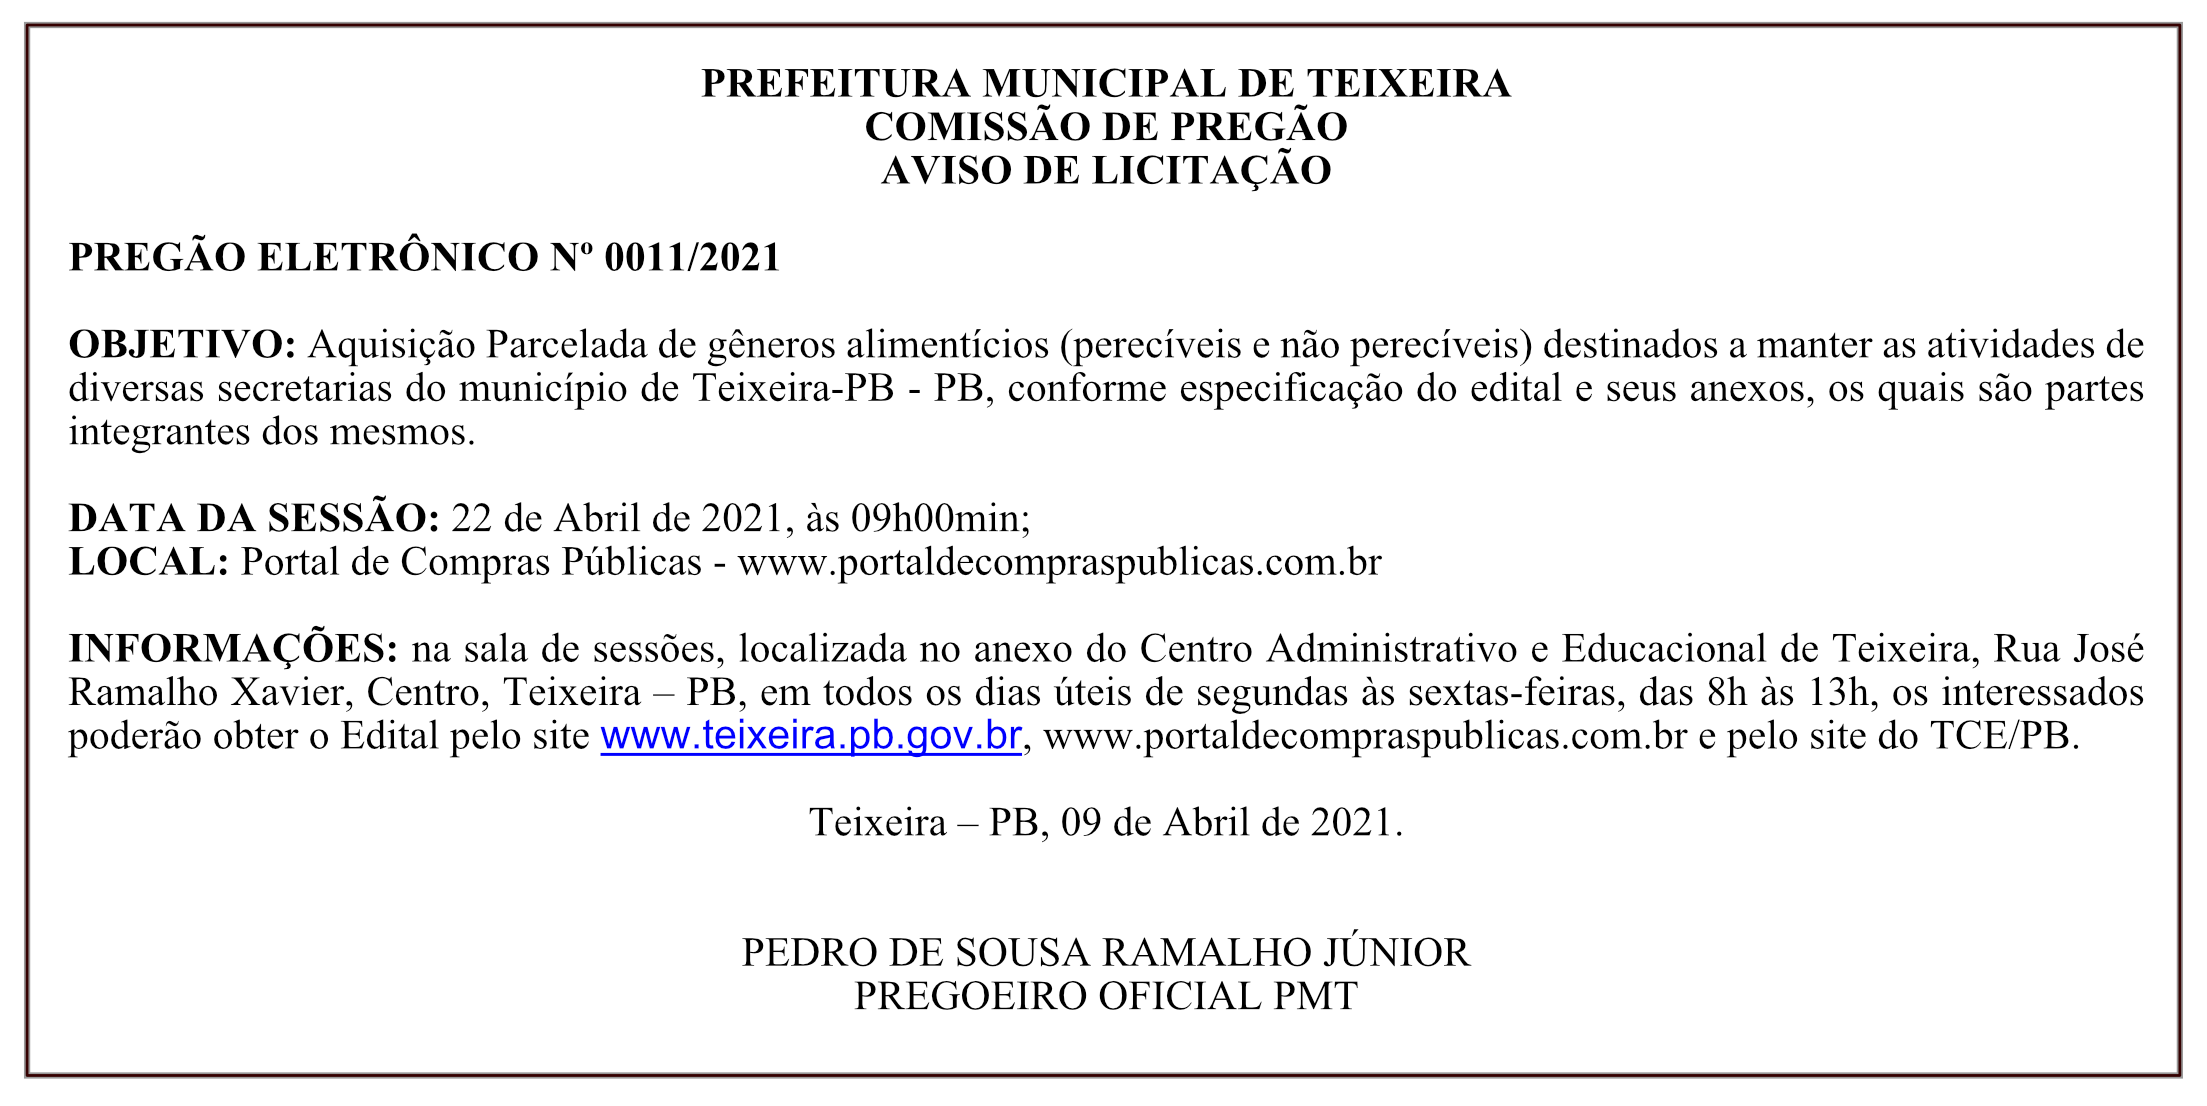 PREFEITURA MUNICIPAL DE TEIXEIRA – COMISSÃO DE PREGÃO – AVISO DE LICITAÇÃO – PREGÃO ELETRÔNICO Nº 0011/2021